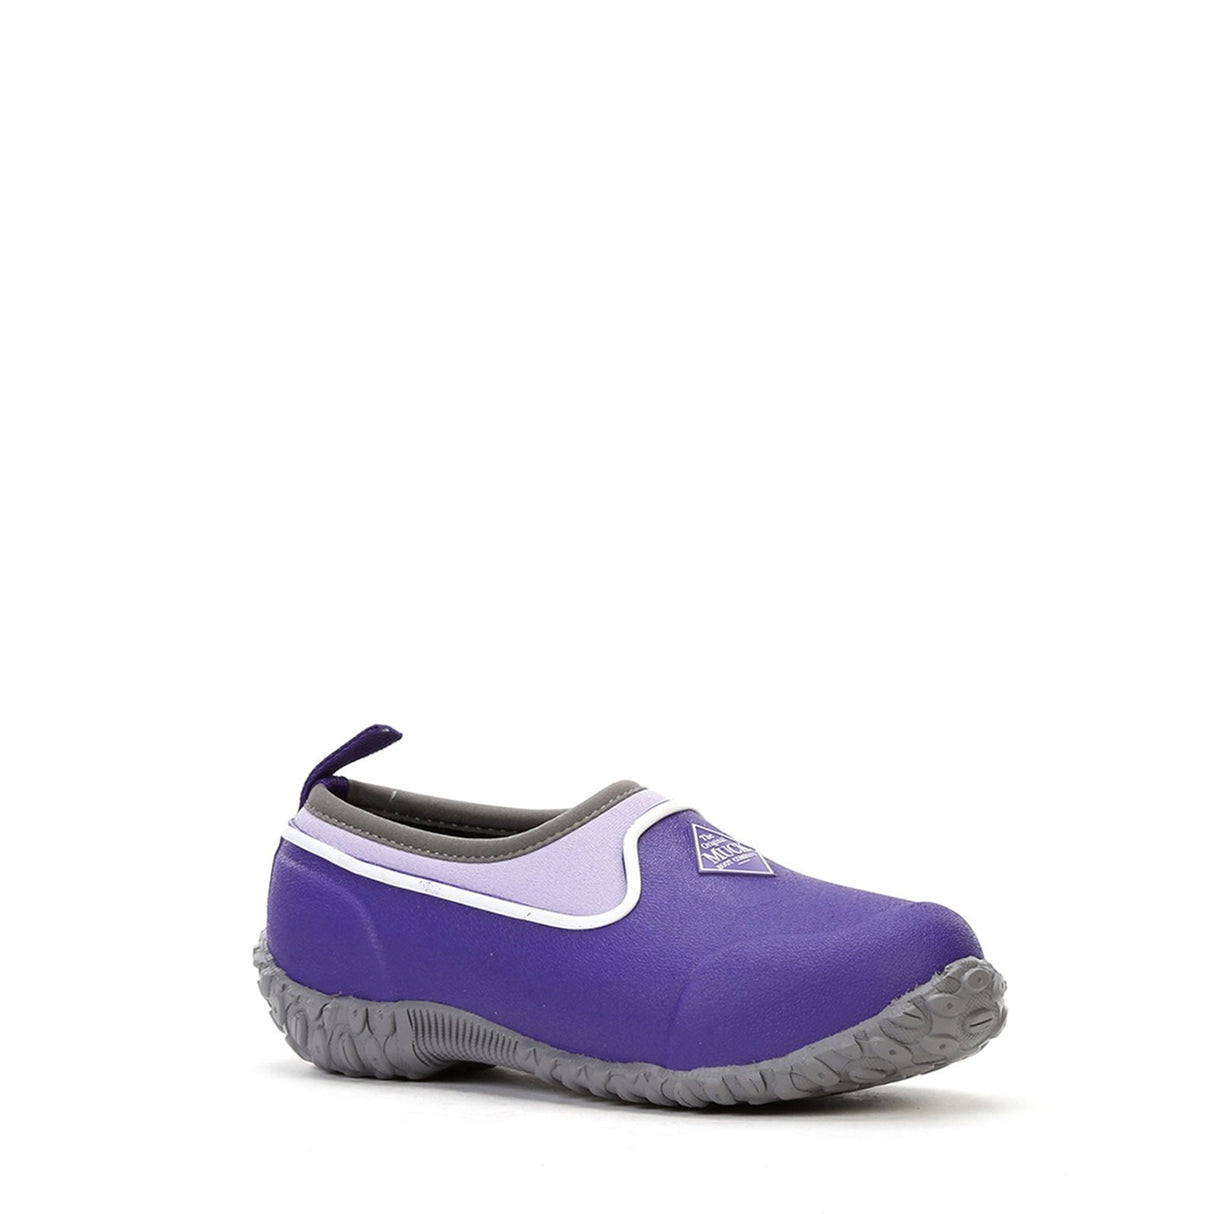 Kids' Muckster II Shoes Purple